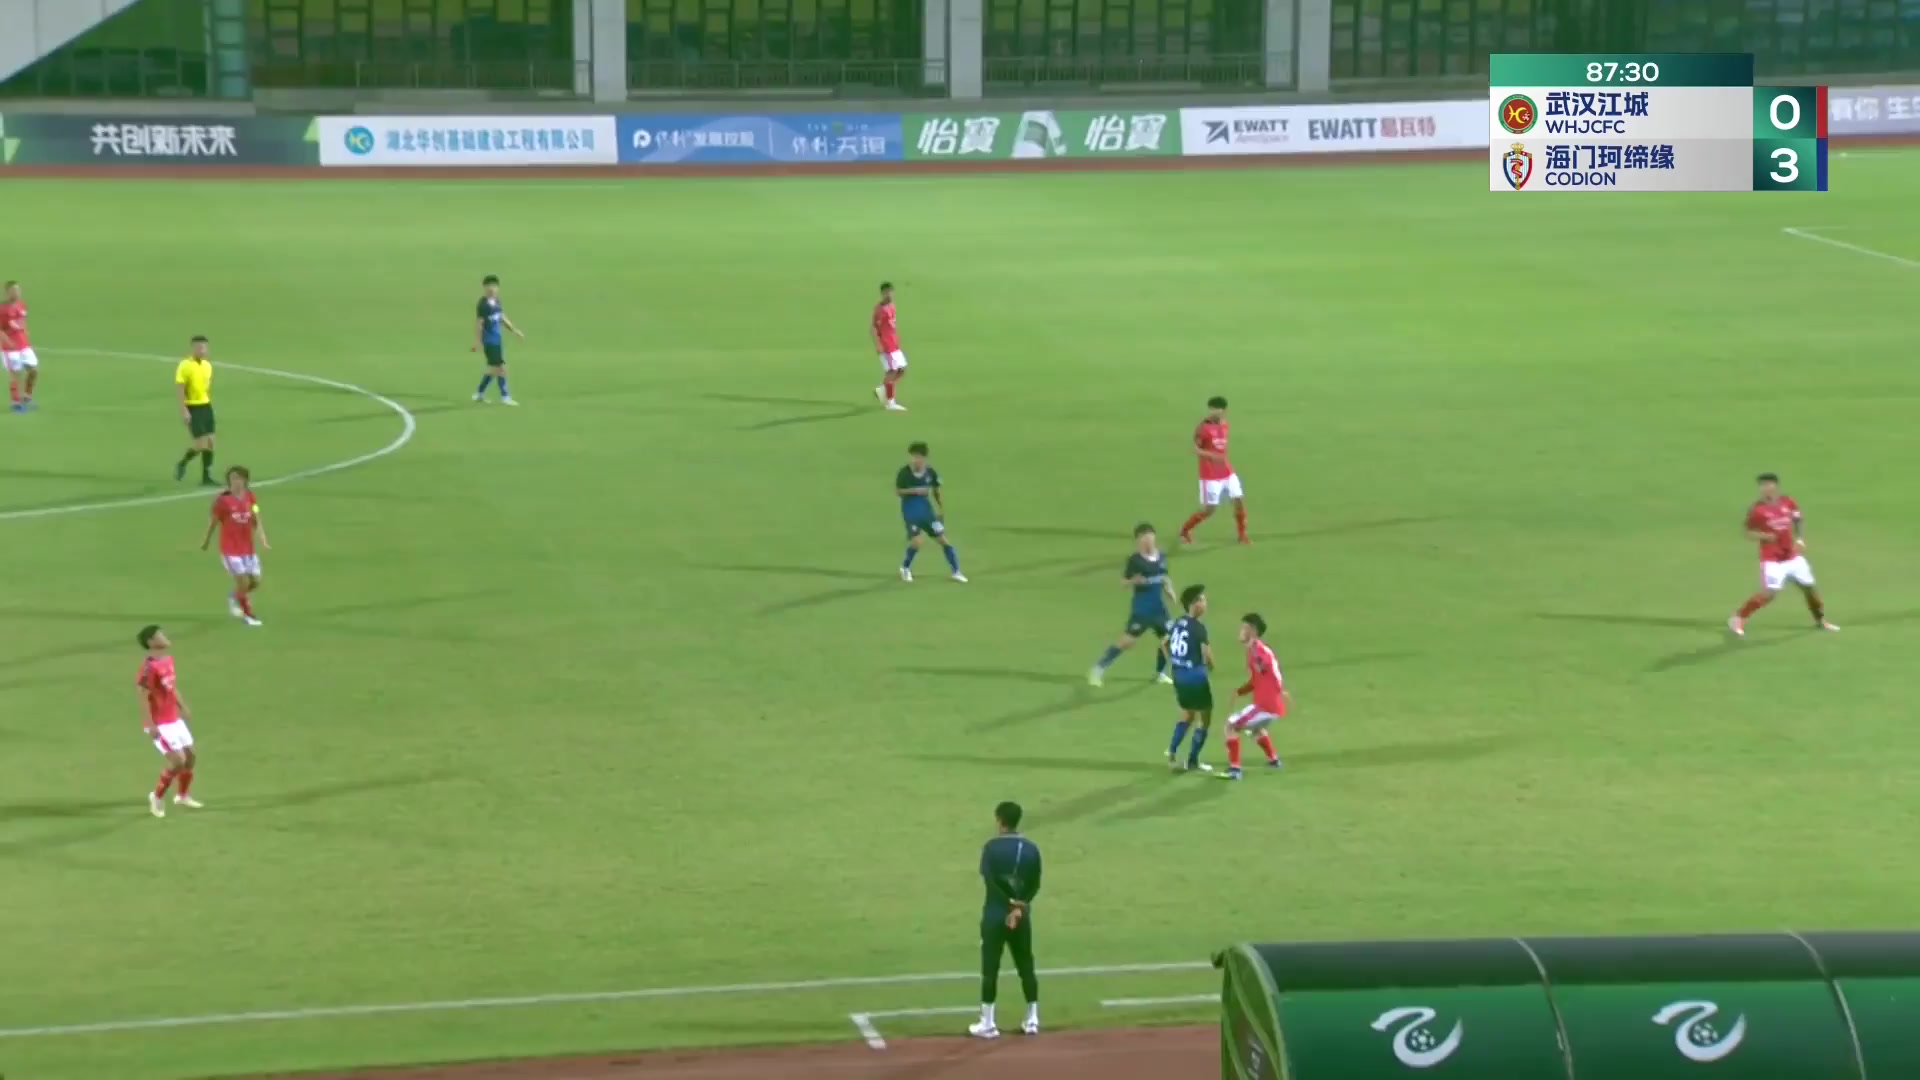 CHA D2 Wuhan JiangCheng Vs Haimen Codion  Goal in 88 min, Score 0:4